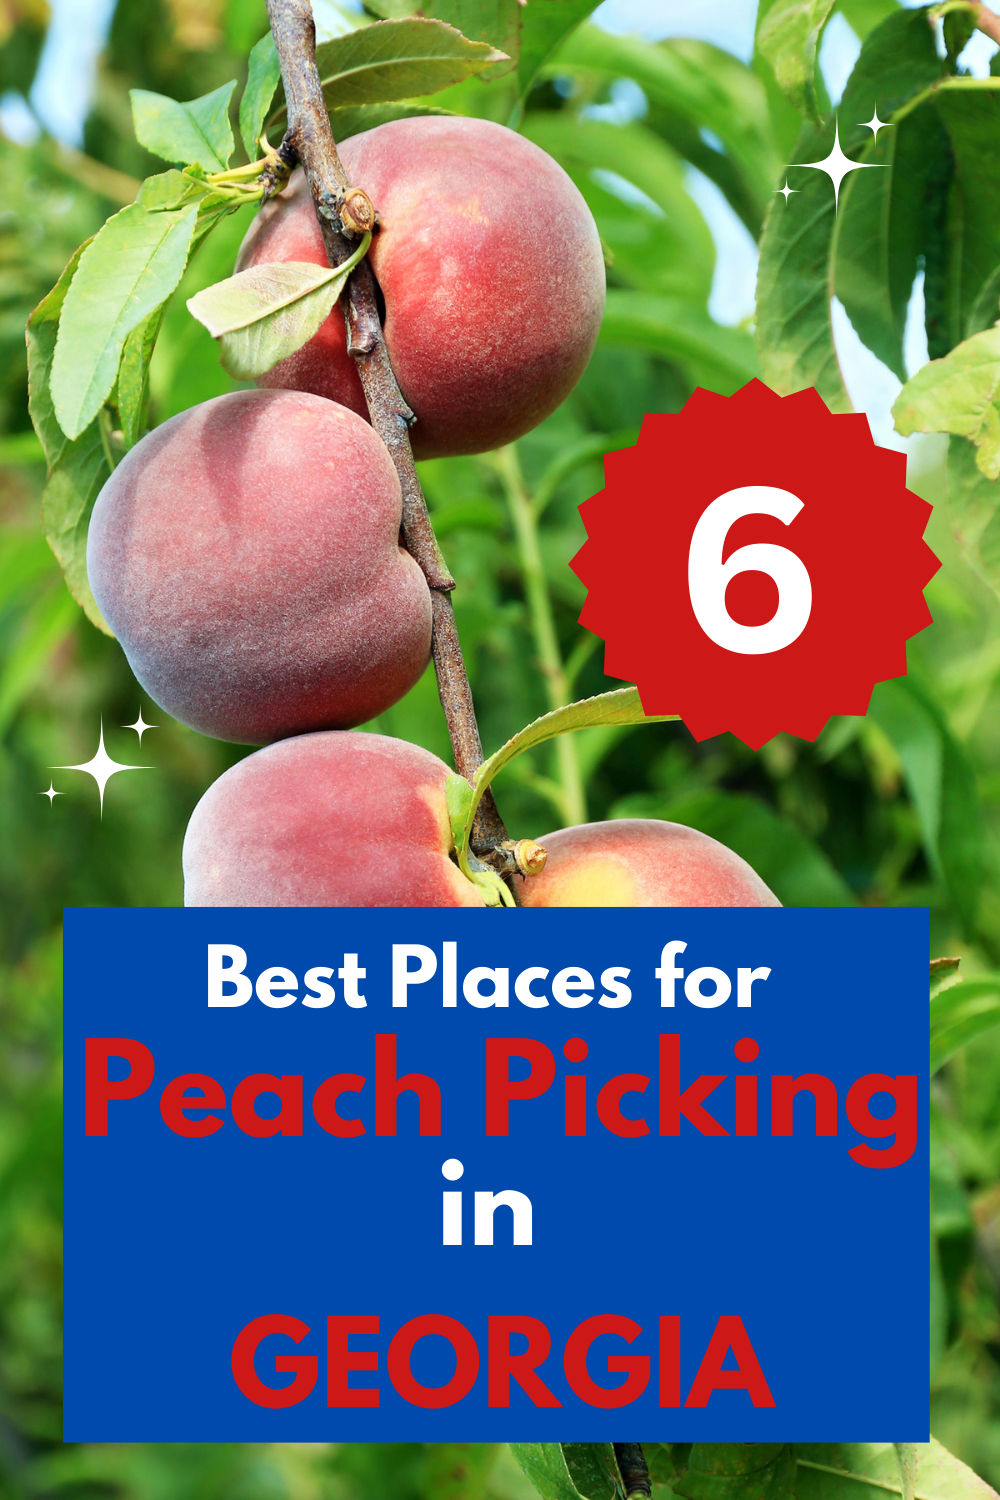 Peach Picking Farms in Georgia